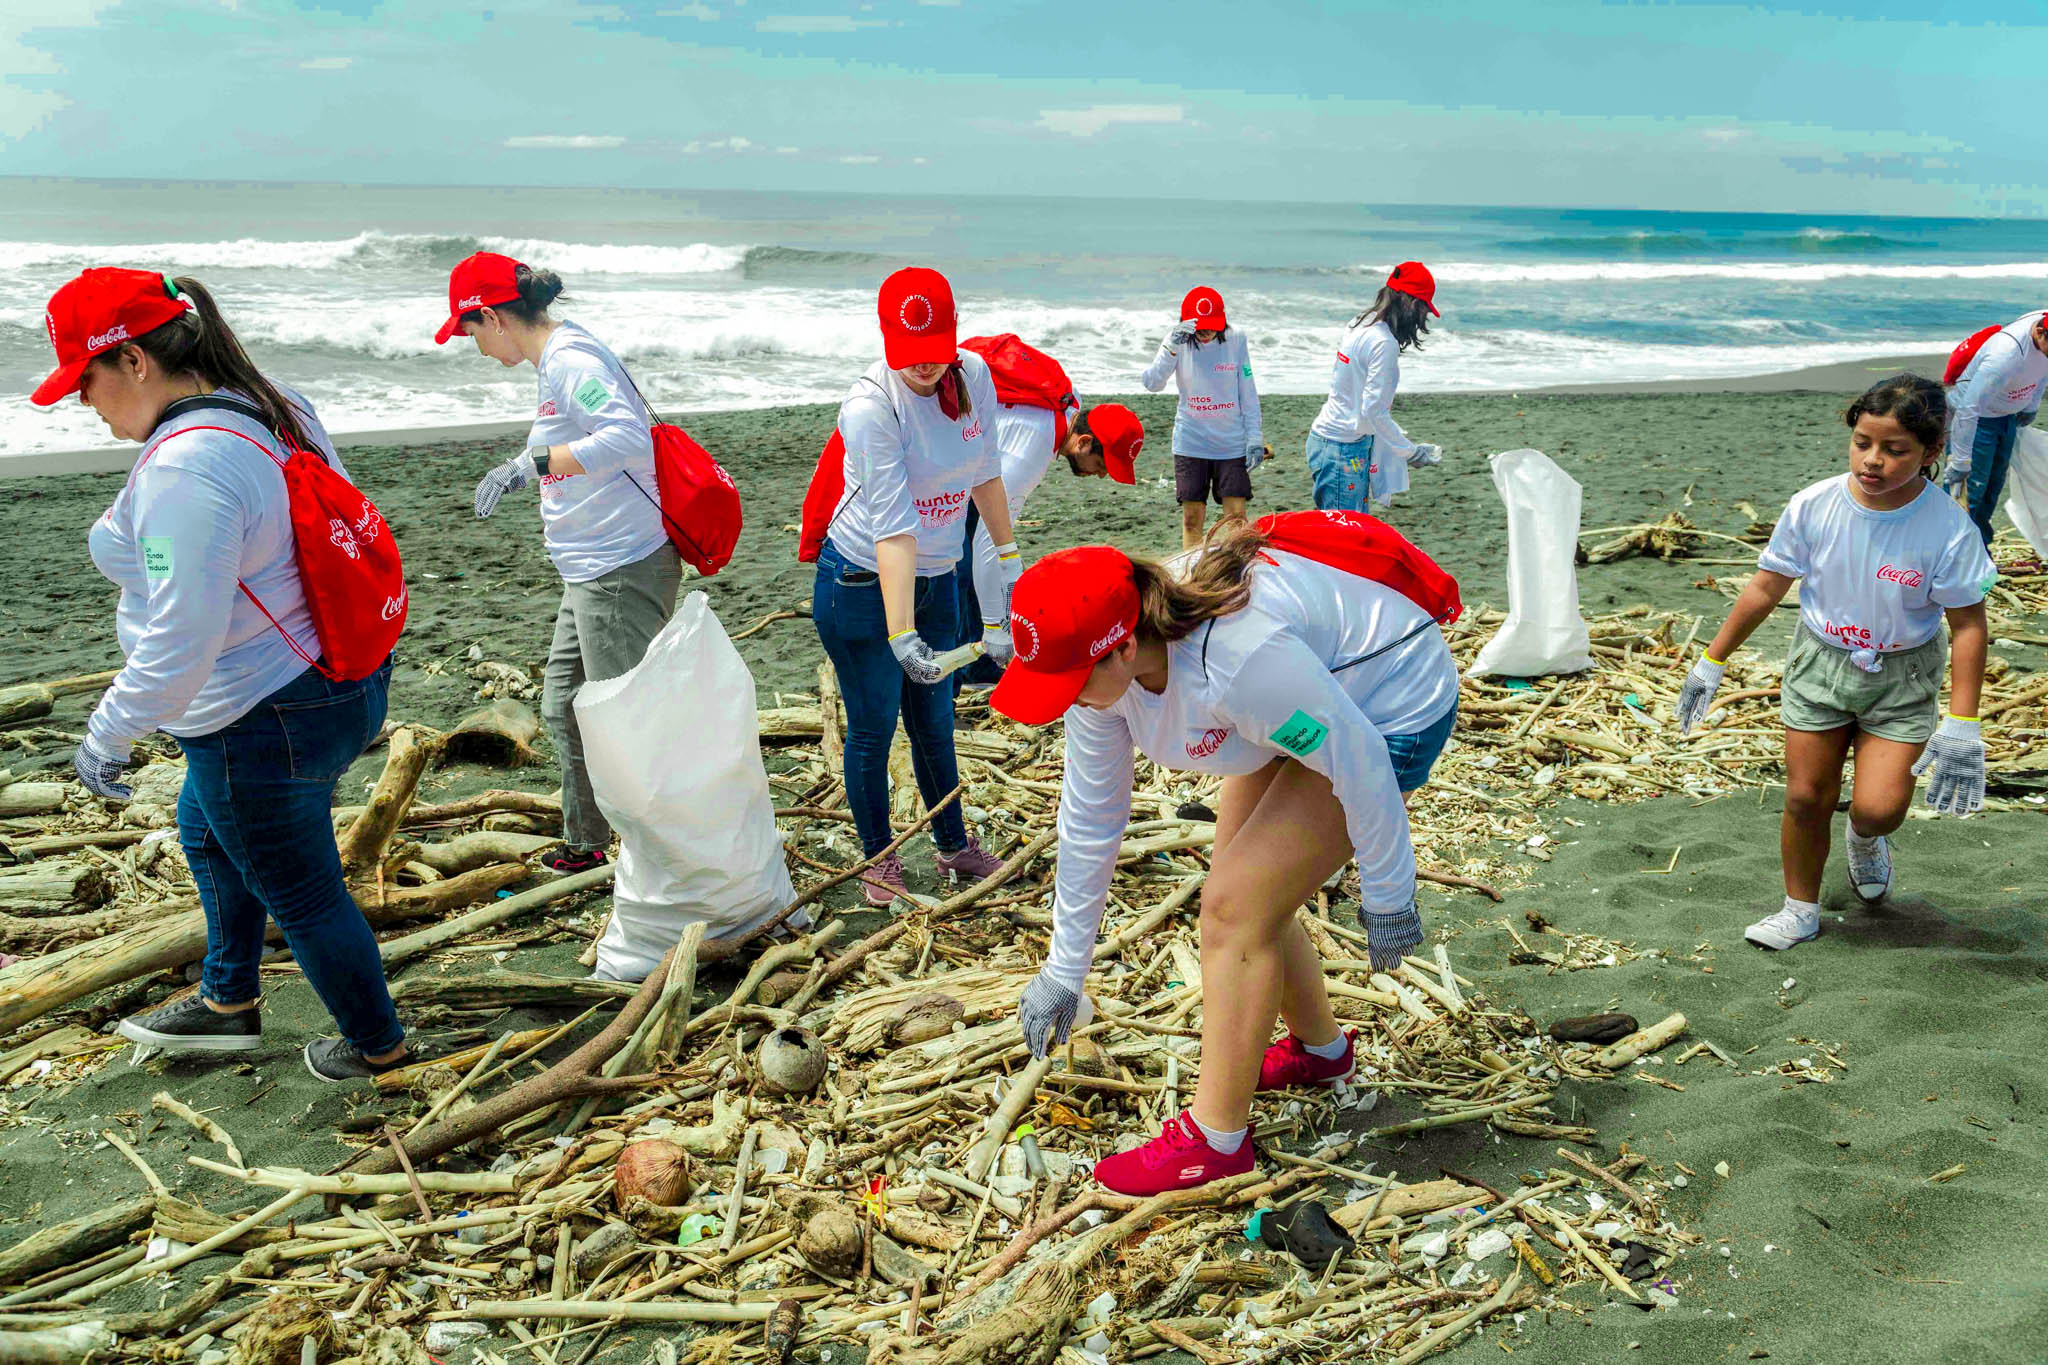 Sistema Coca-Cola en Guatemala, reúne a más de 300 voluntarios para realizar su jornada de limpieza de playas